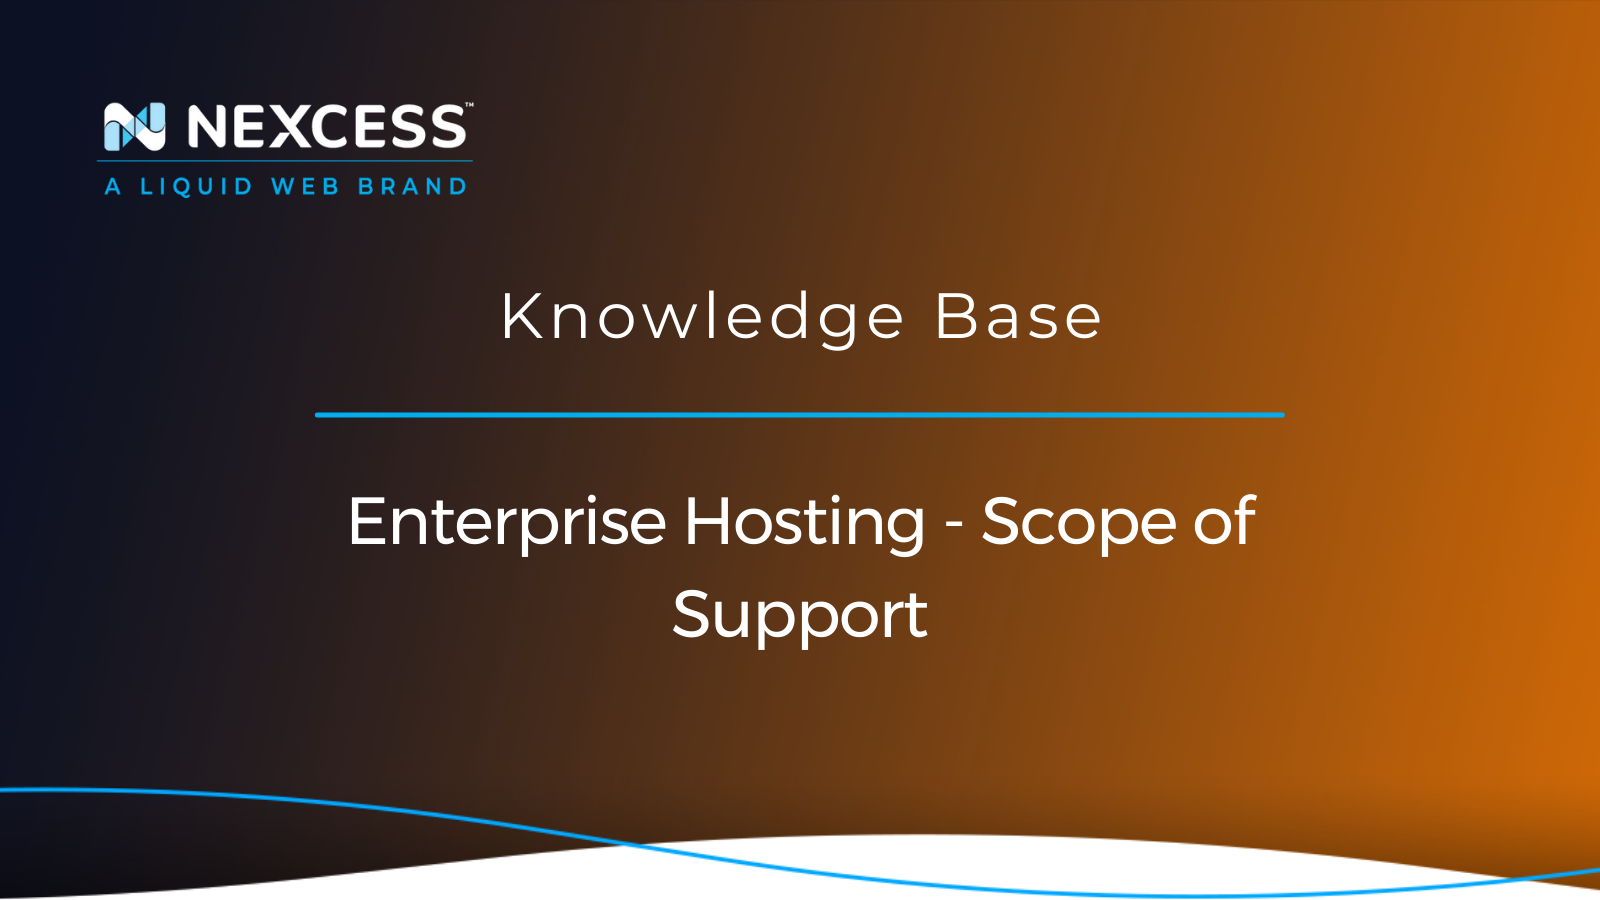 Enterprise Hosting - Scope of Support